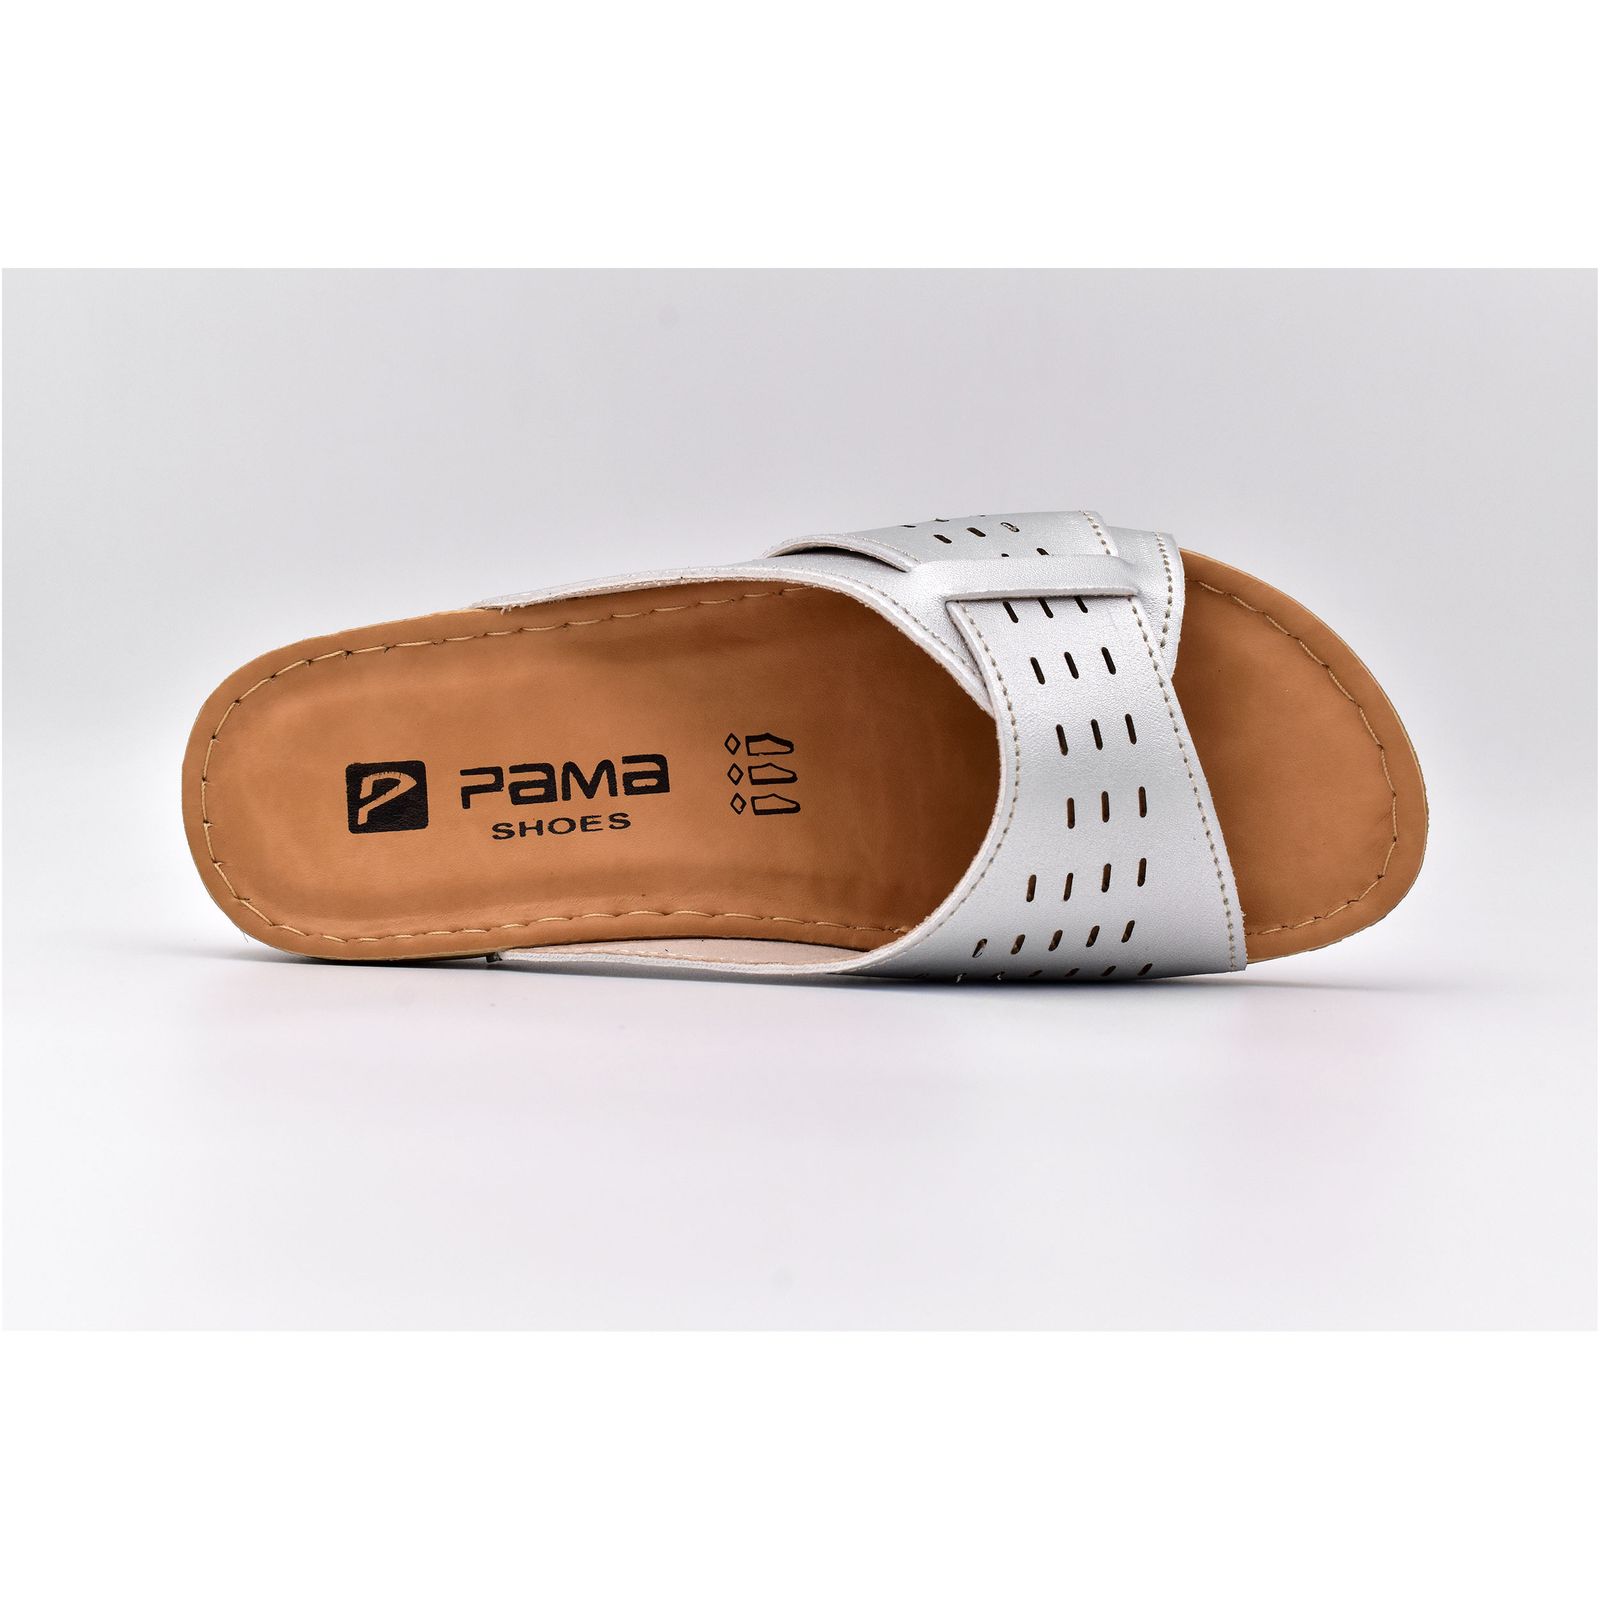 دمپایی زنانه پاما مدل پارسه کد G1553 -  - 7